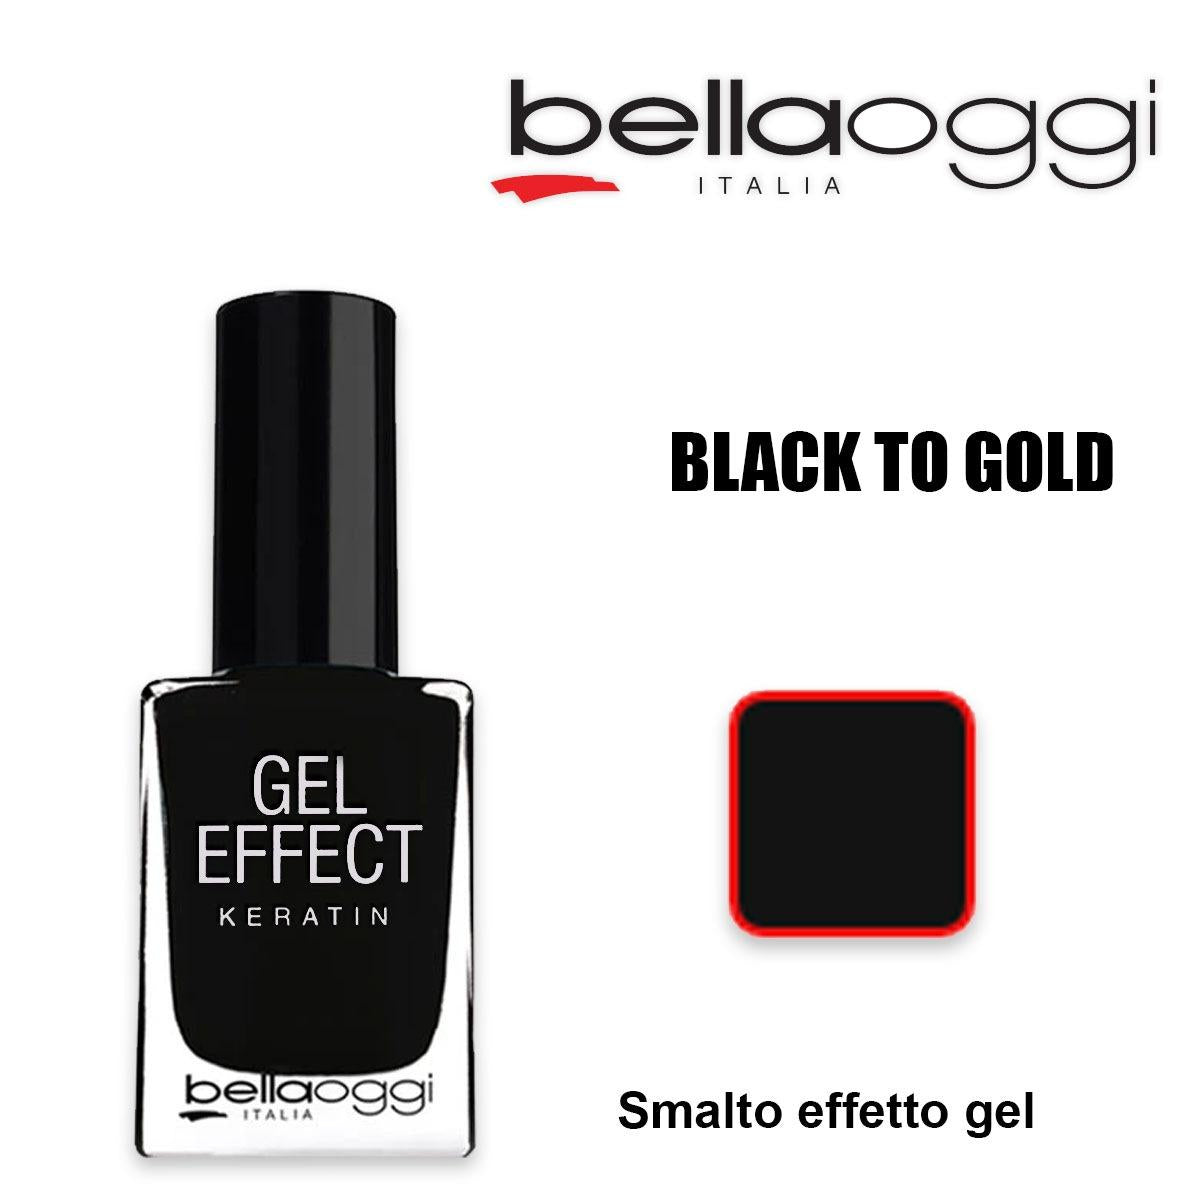 Bellaoggi Smalto Gel Effetto Keratina 073 Black To Gold